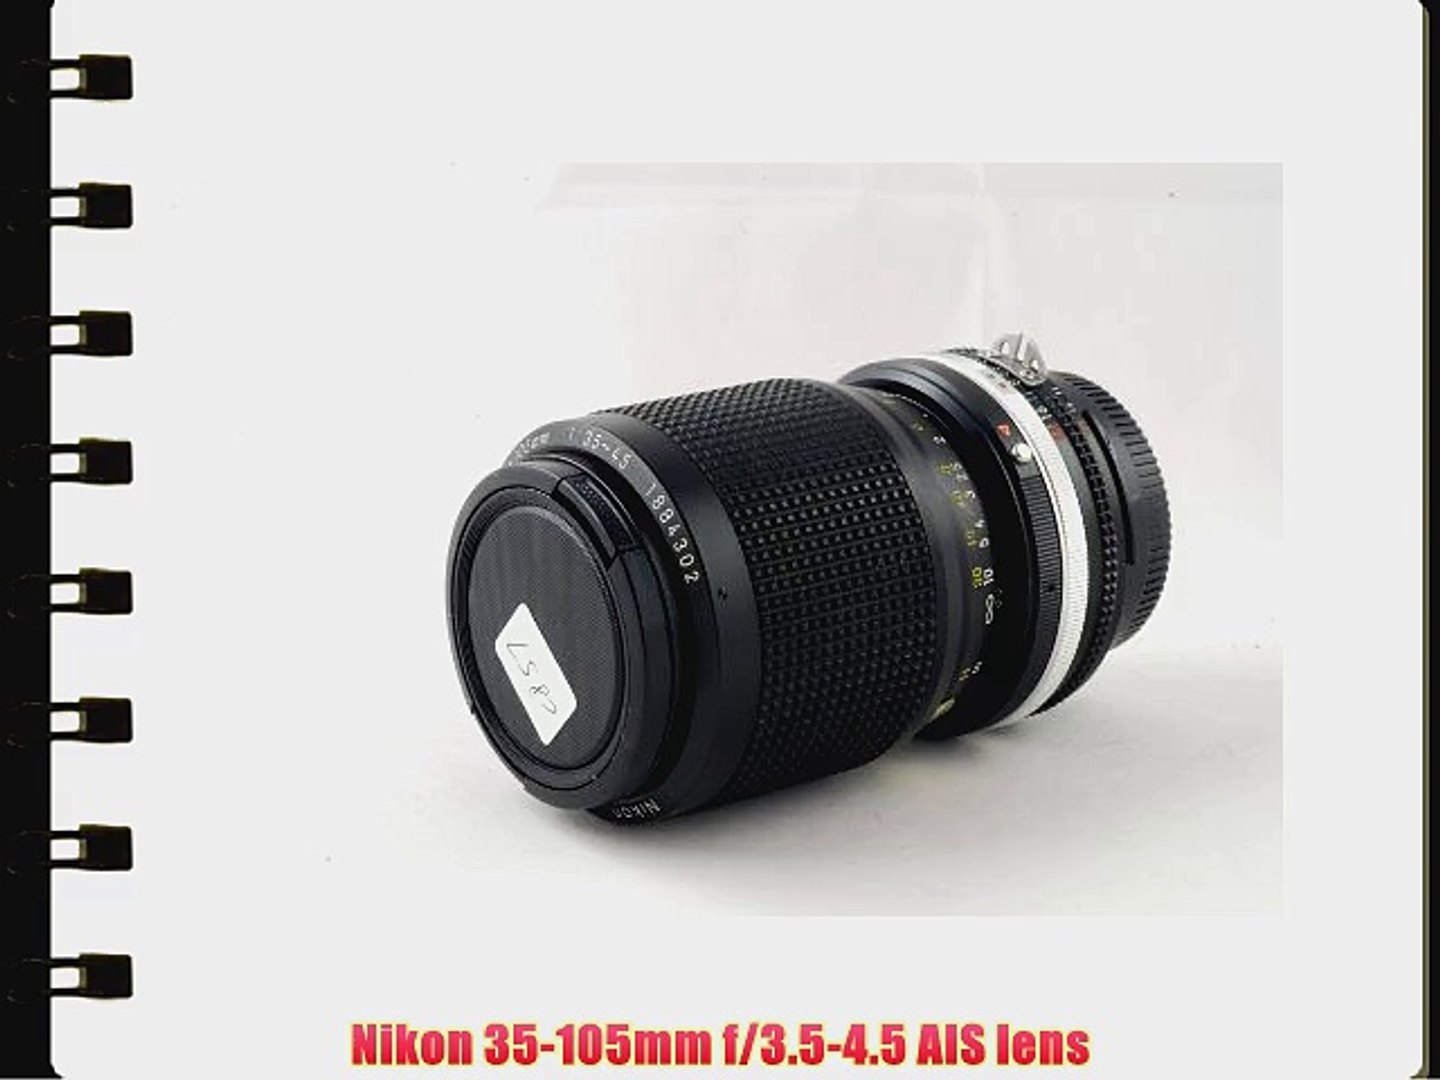 Nikon 35-105mm f/3.5-4.5 AIS lens - video Dailymotion